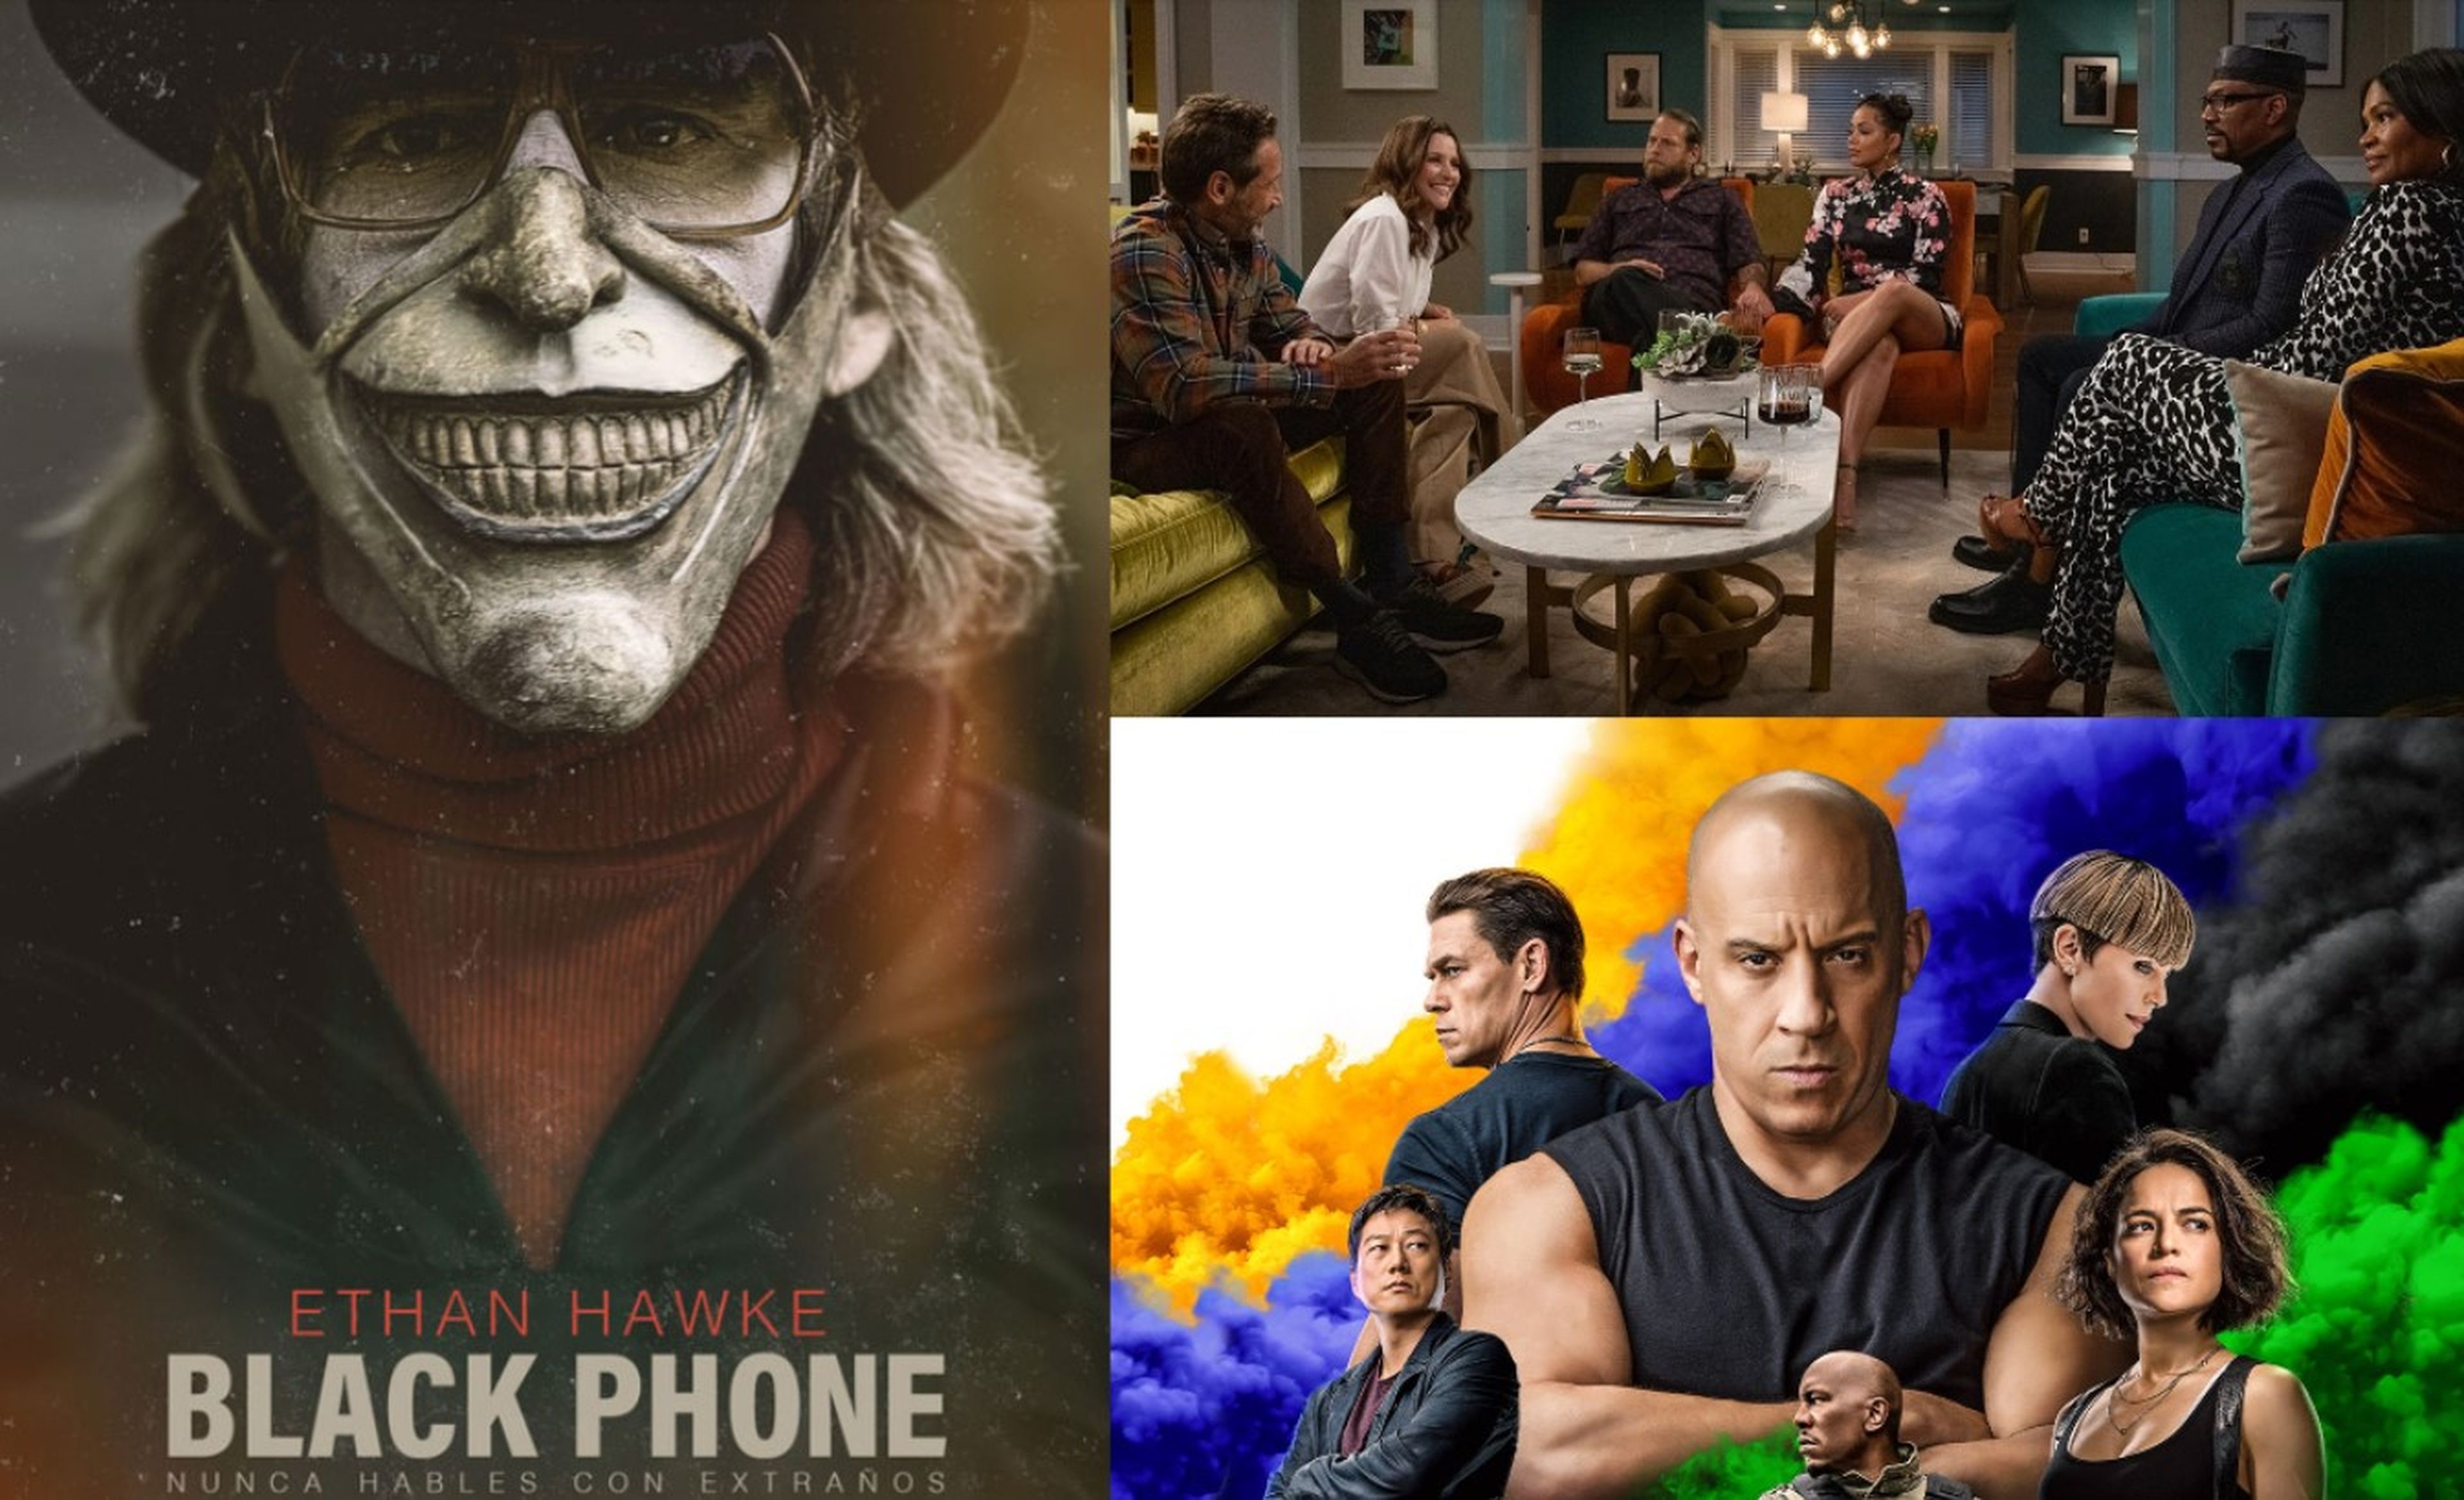 Qué películas ver este fin de semana en Netflix, Prime Video y MovistarPlus+: BlackPhone, Fast & Furious 9 y una comedia con Jonah Hill